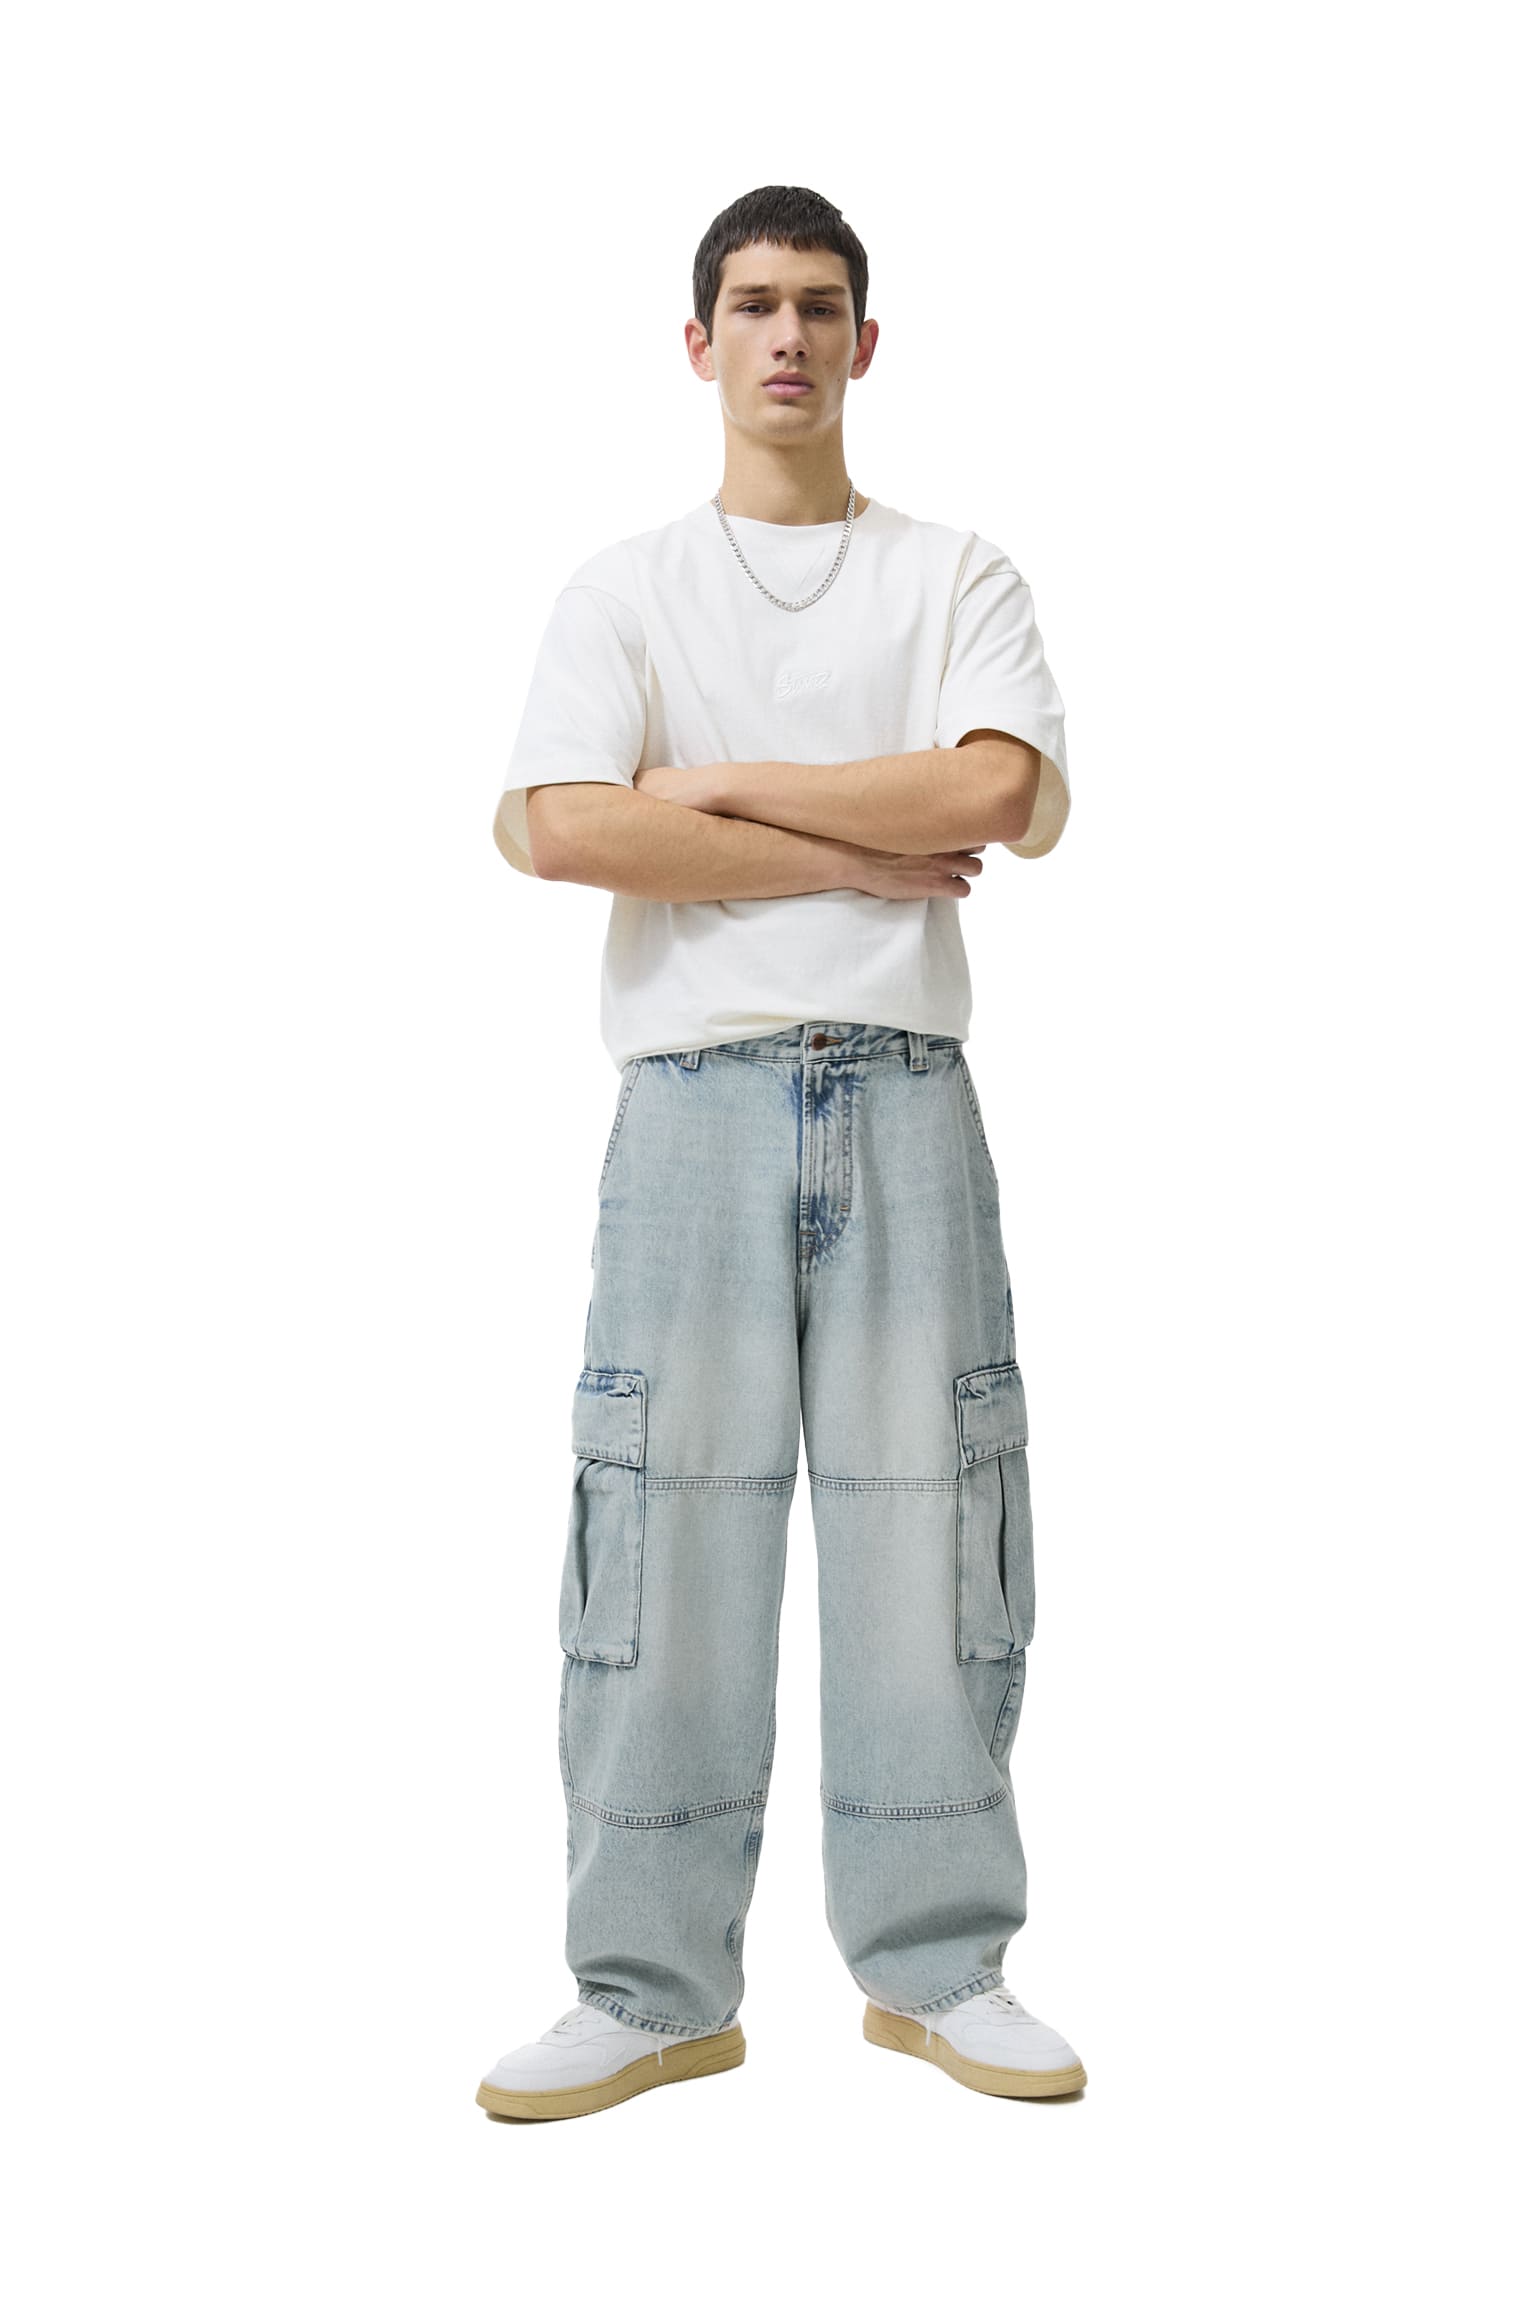 Jeans Largas de Homem, Relaxed Fit jeans